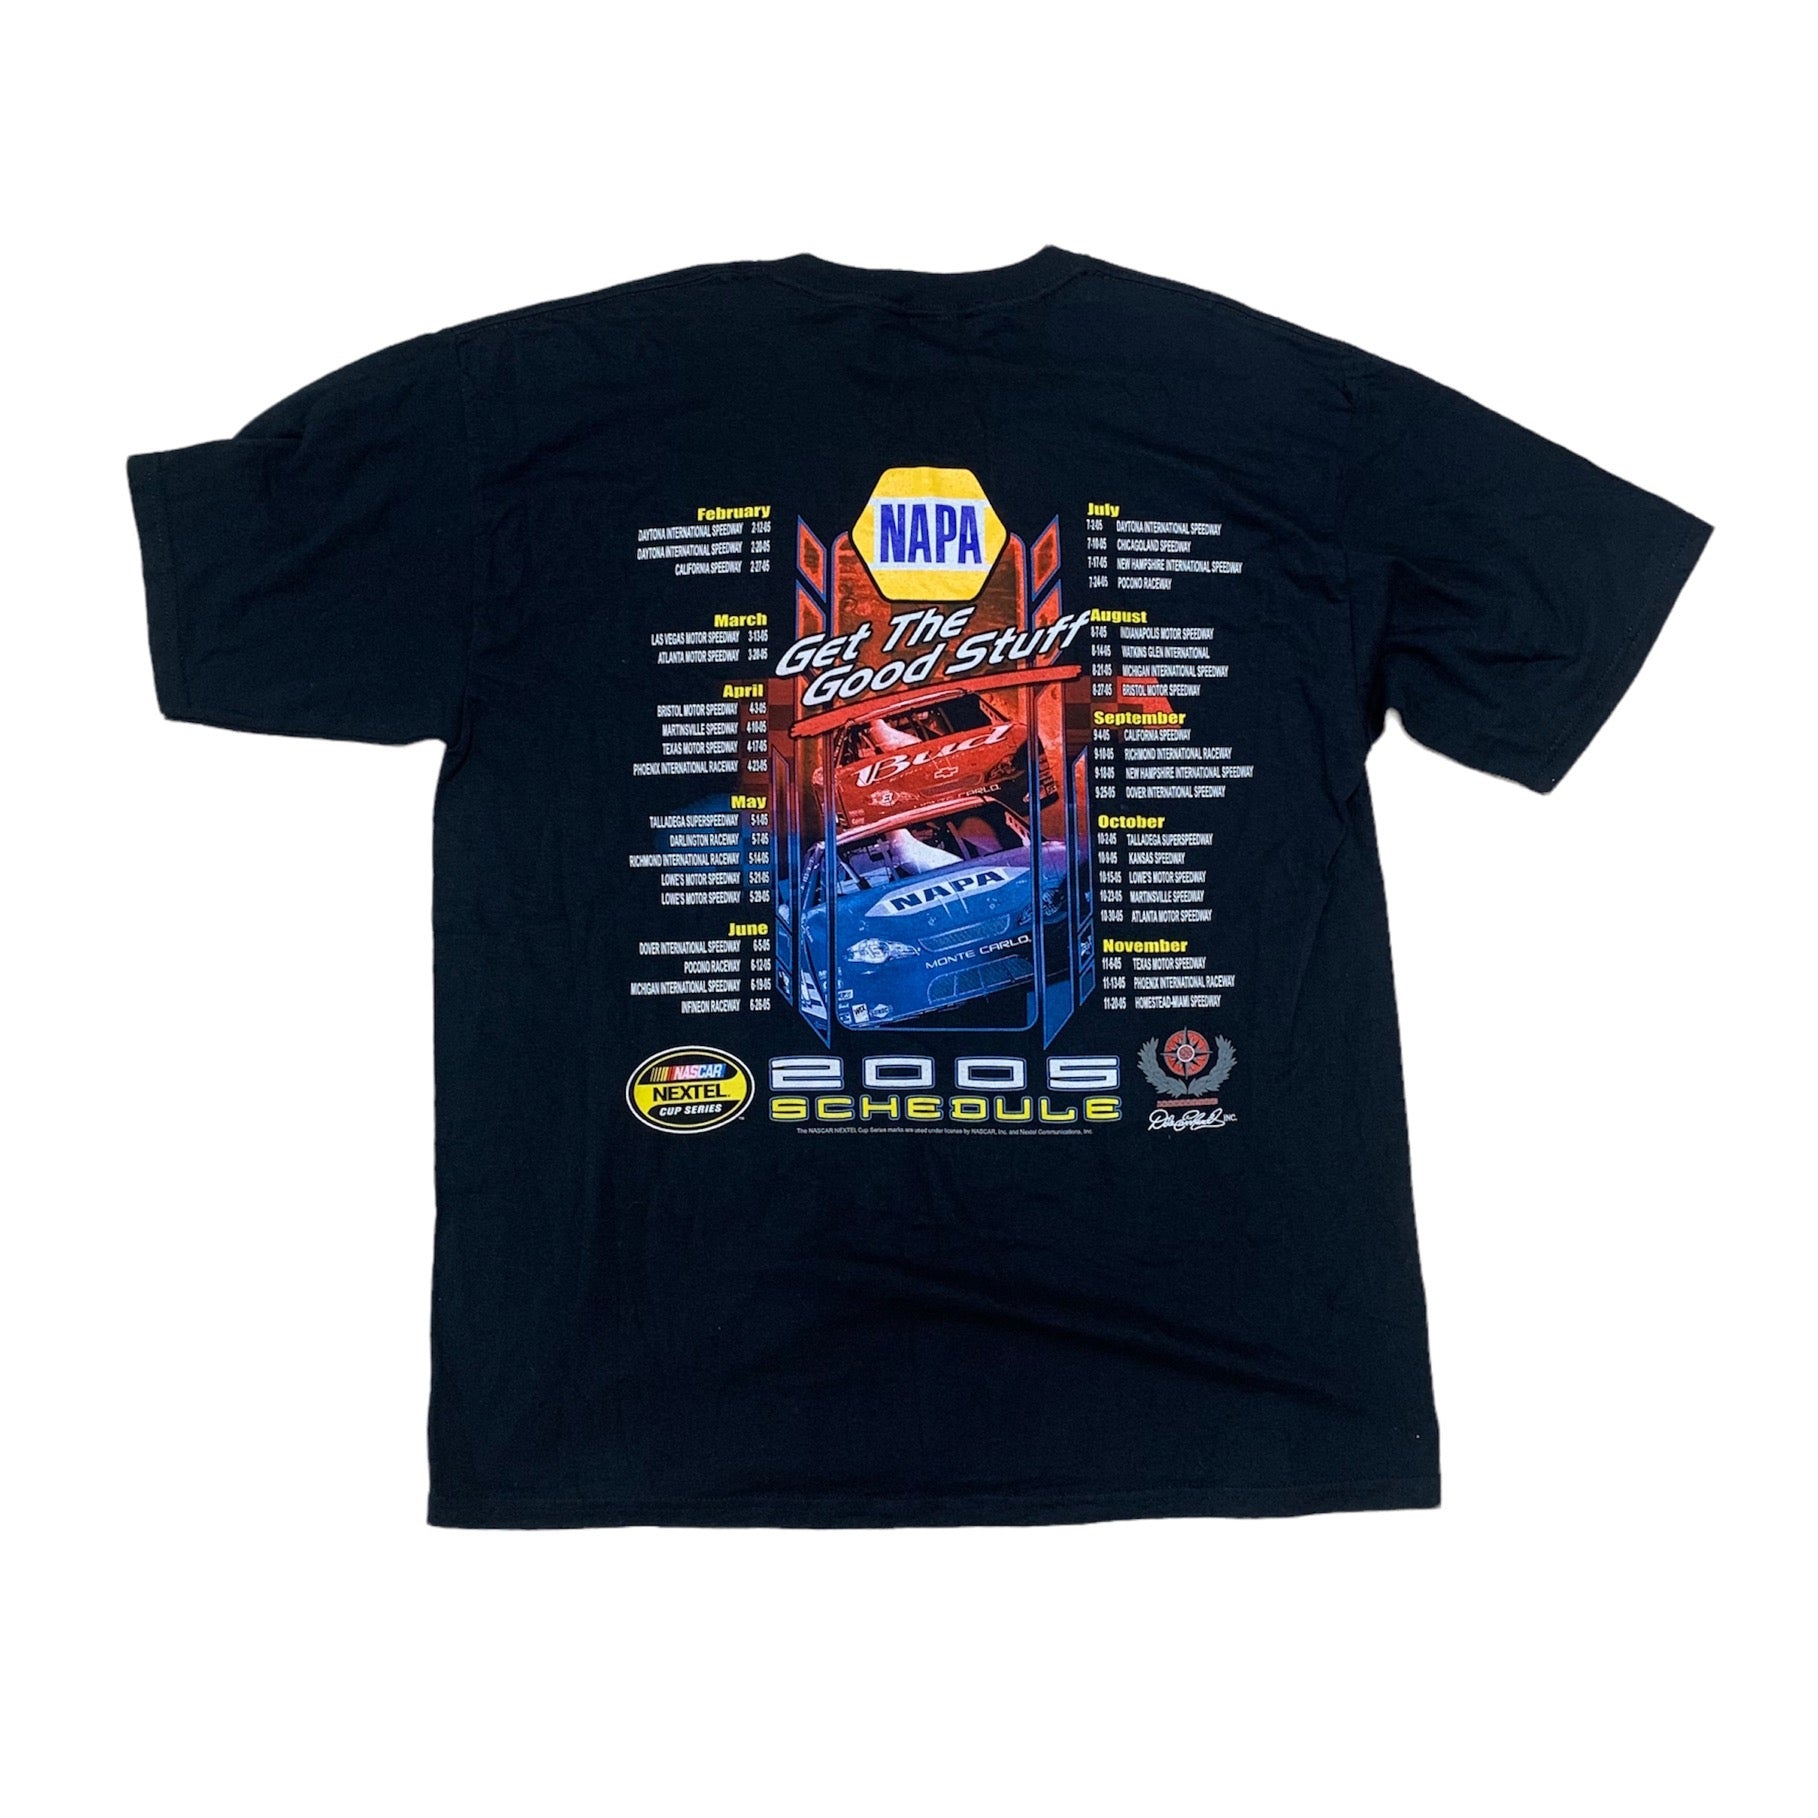 2005 NAPA RACING NASCAR TEE